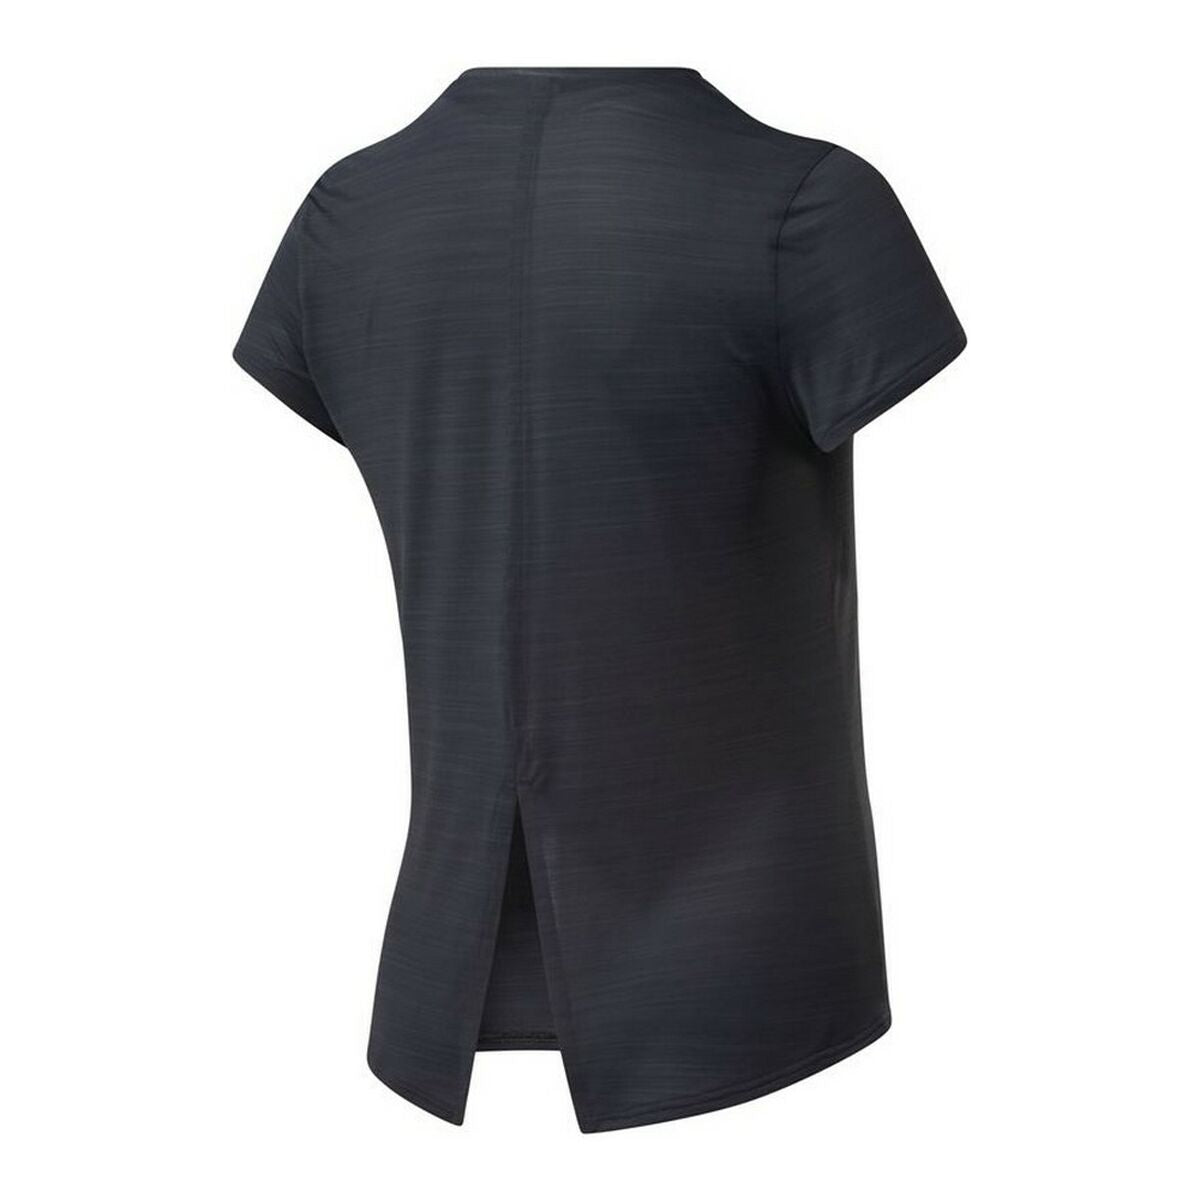 Women’s Short Sleeve T-Shirt Reebok Workout Ready Activchill Black